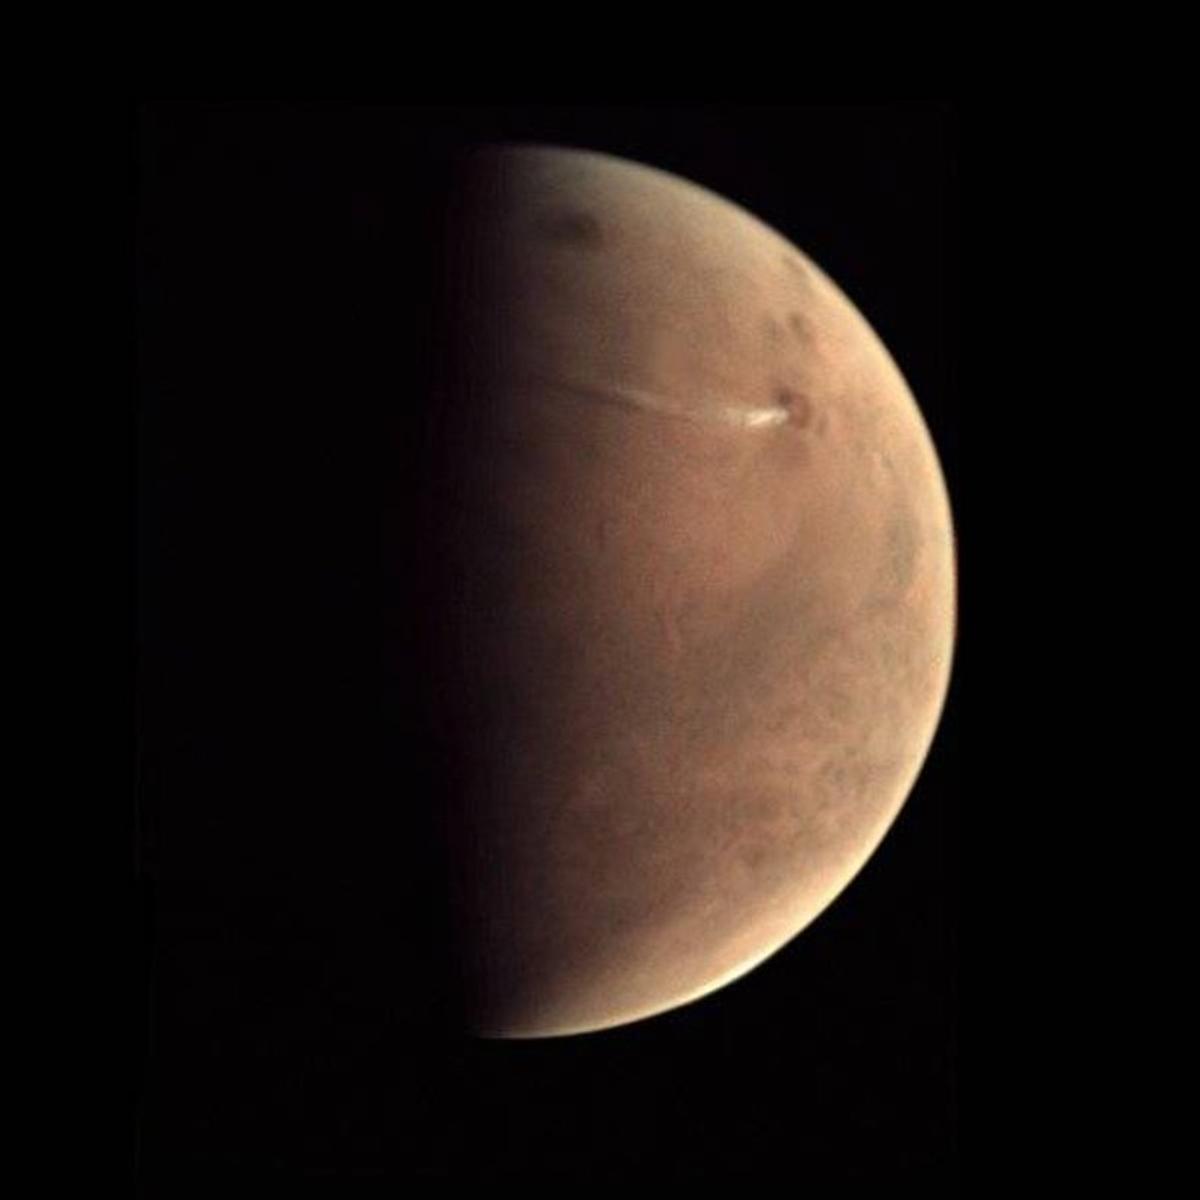 Fotografía de Marte tomada por el orbitador Mars Express de la ESA.